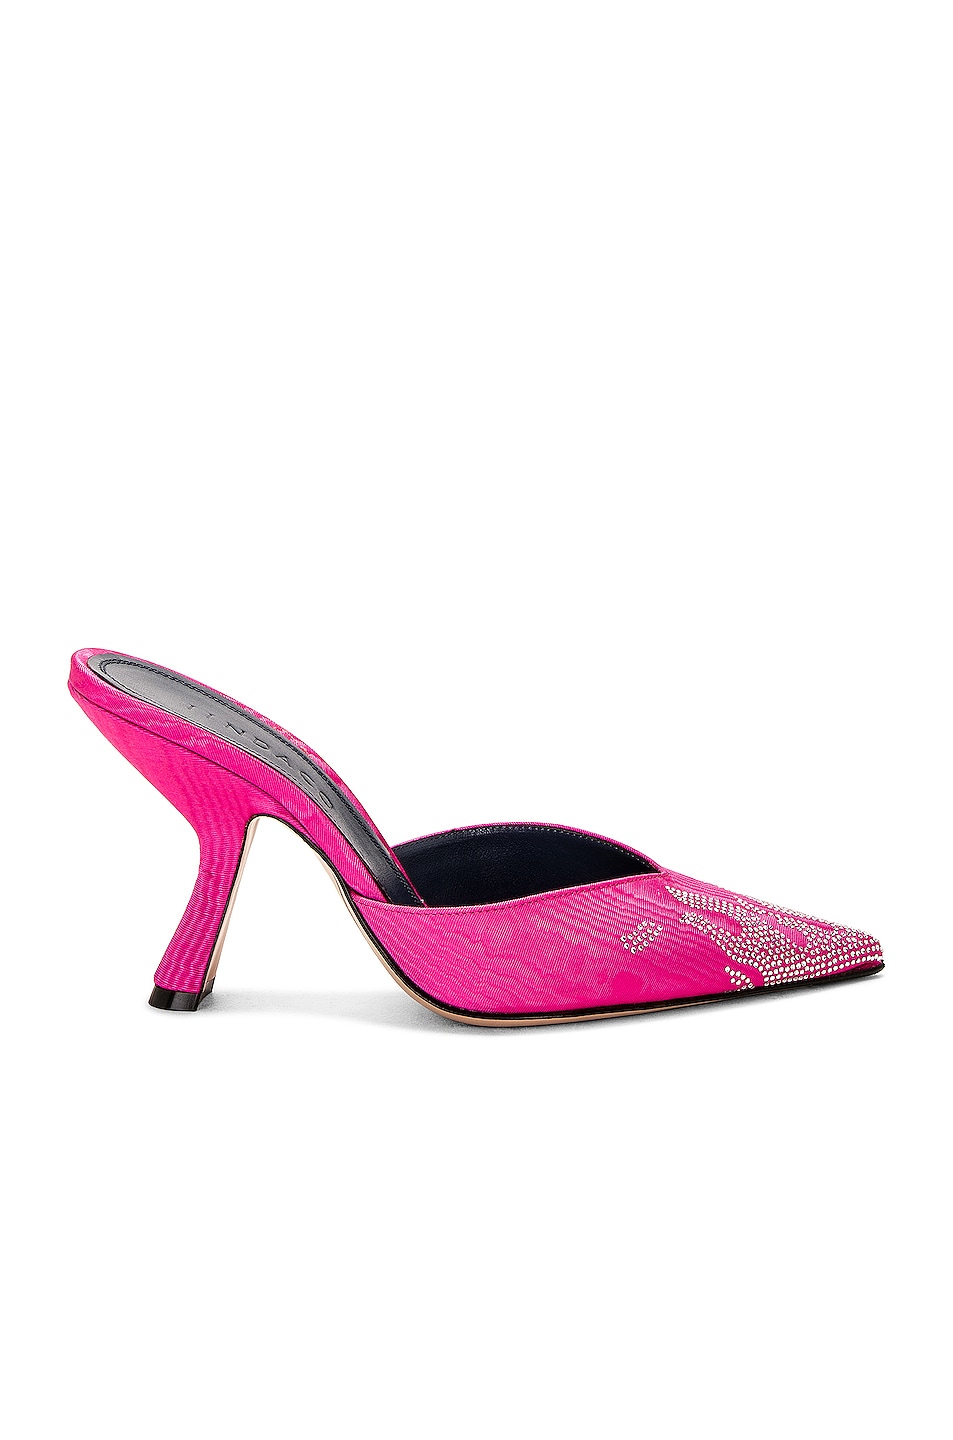 IINDACO Carmen Mule in Hot Pink | FWRD